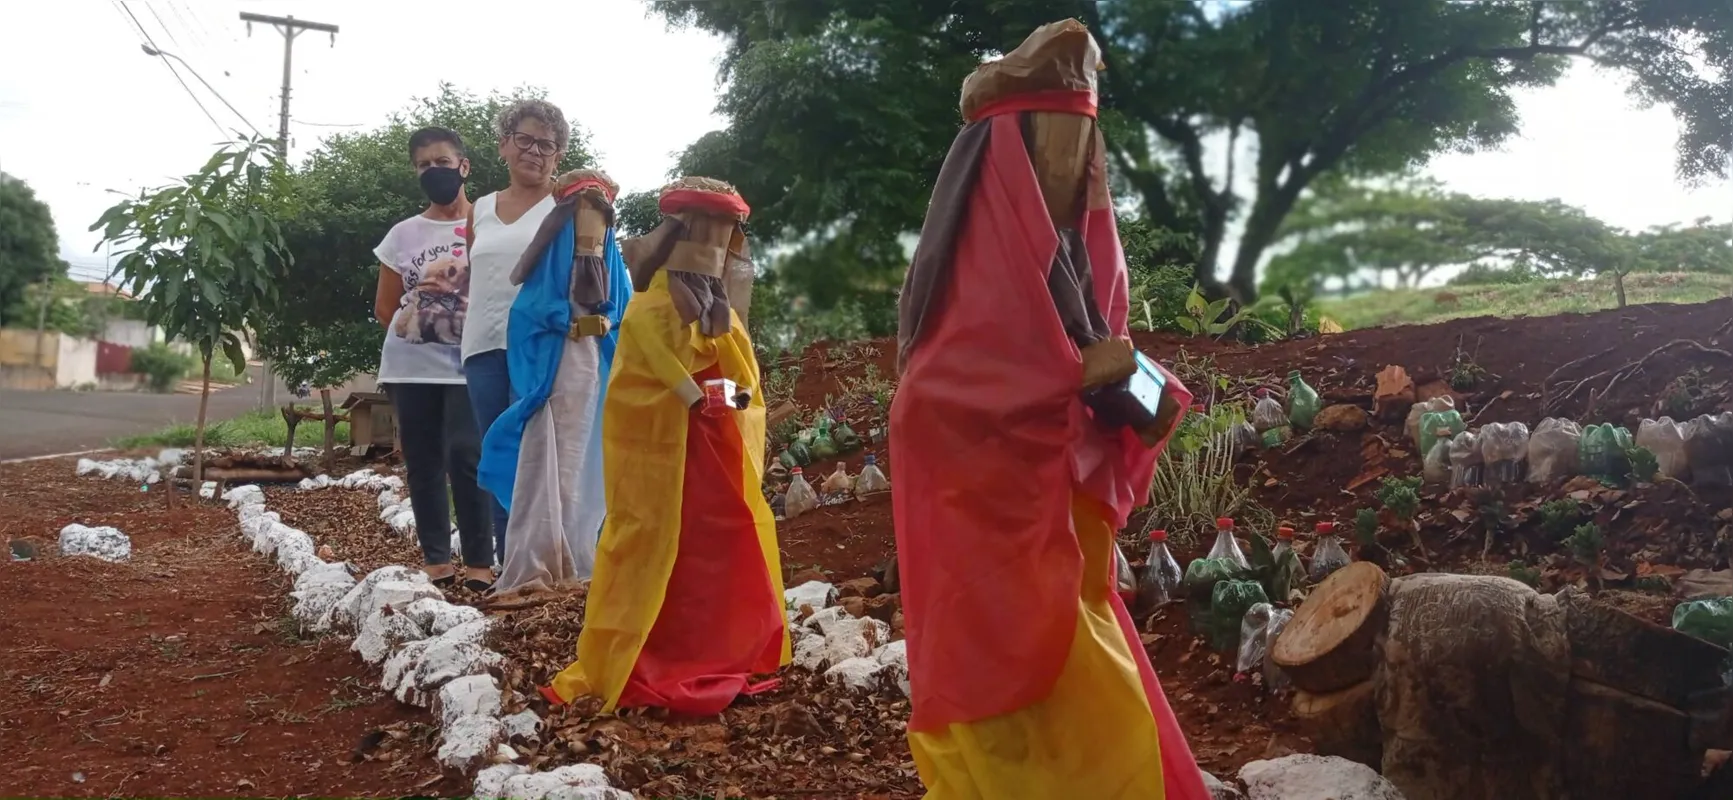 Maria Benedita Isidoro e Dilma Rodrigues Alves da Silva, moradoras do Jardim Tupi: "Vejo o presépio como um exemplo para toda a vida"